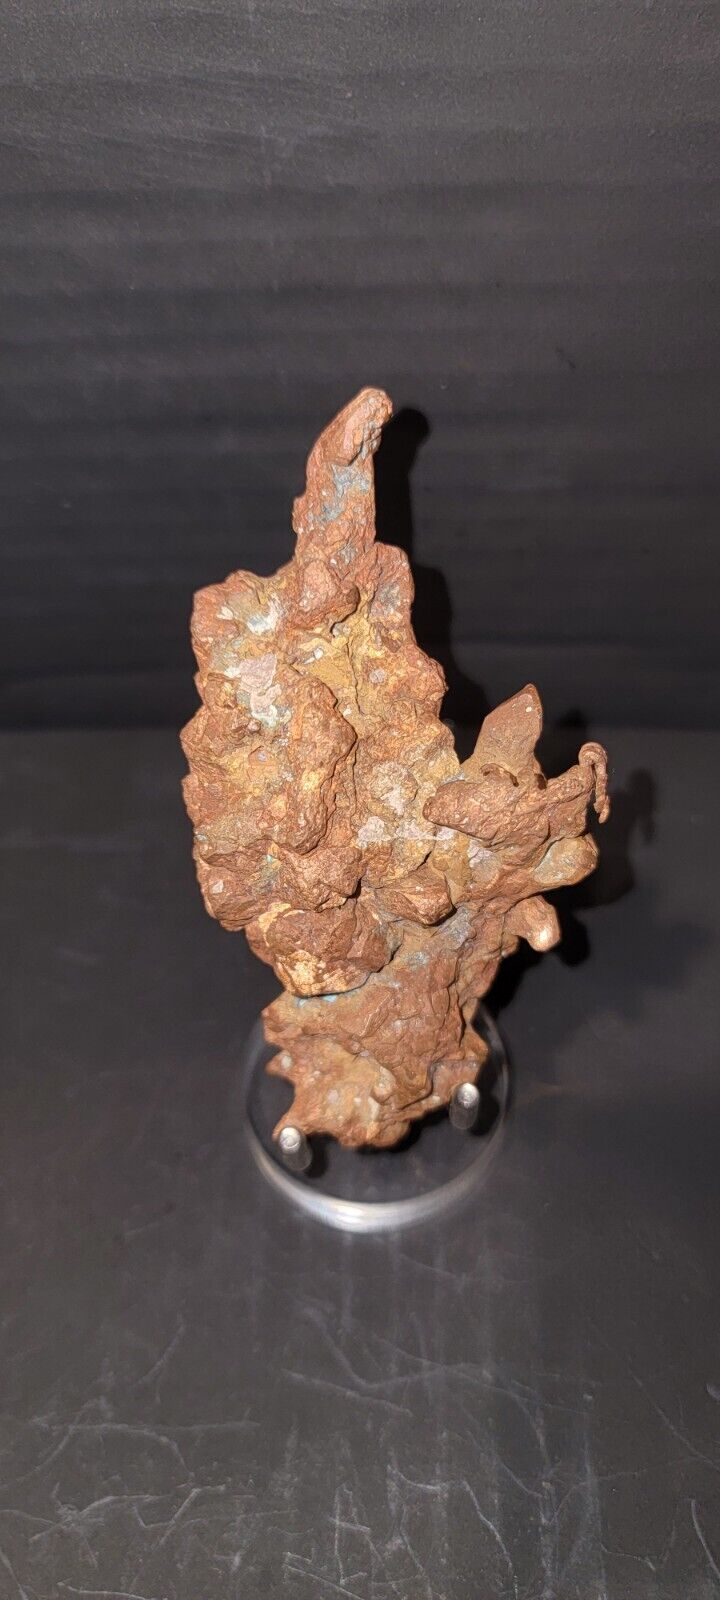 Rare Native Copper, well crystalized specimen Victoria Mine, Michigan